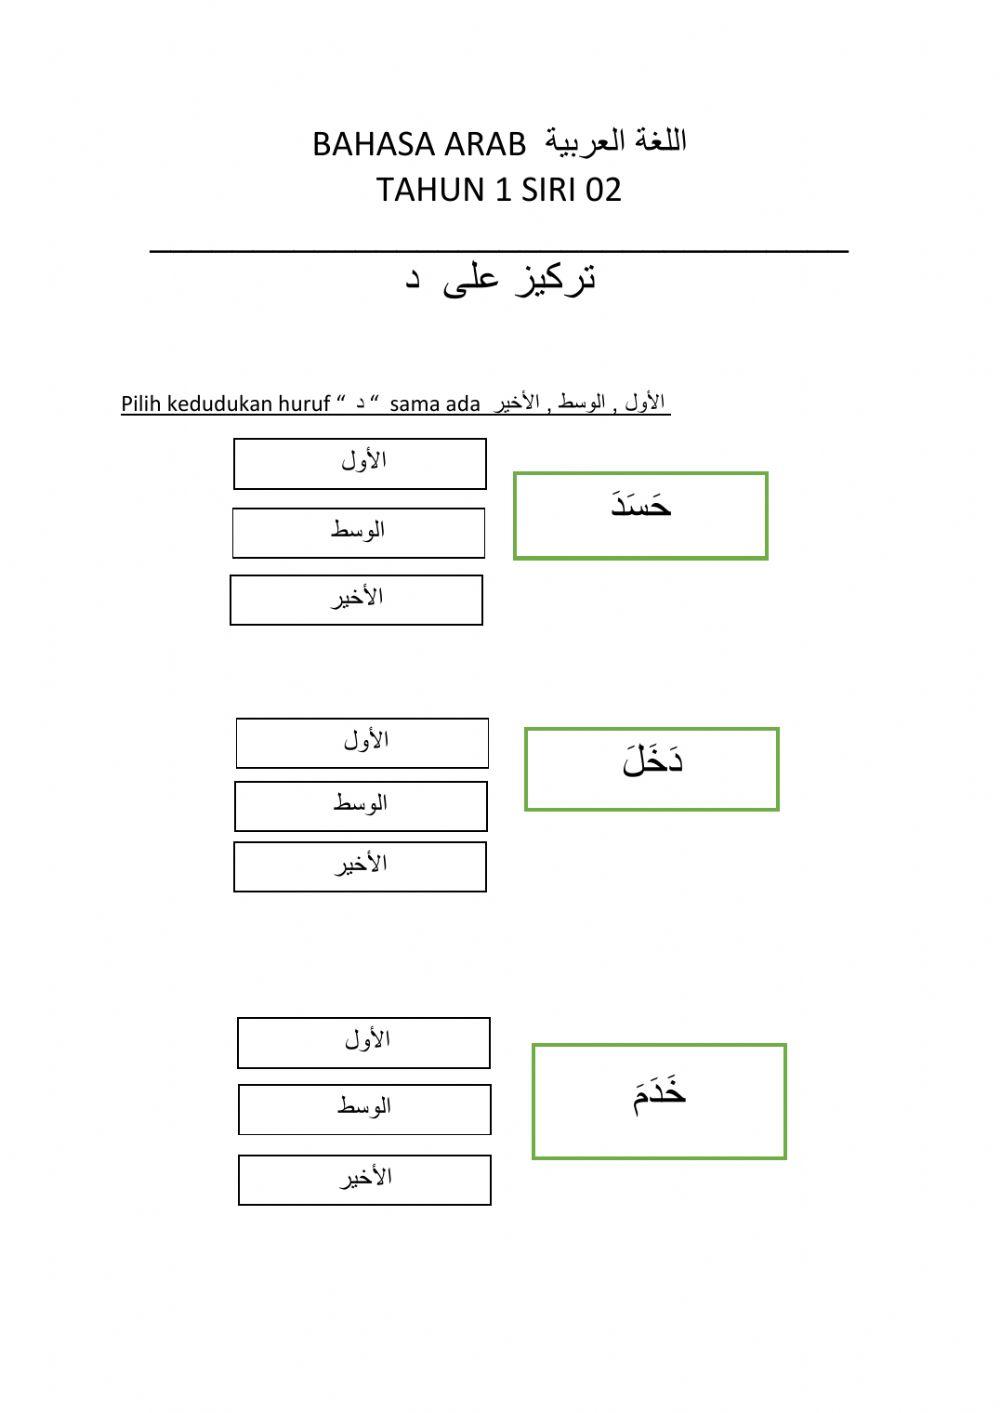 Bahasa arab tahun 1 siri 2